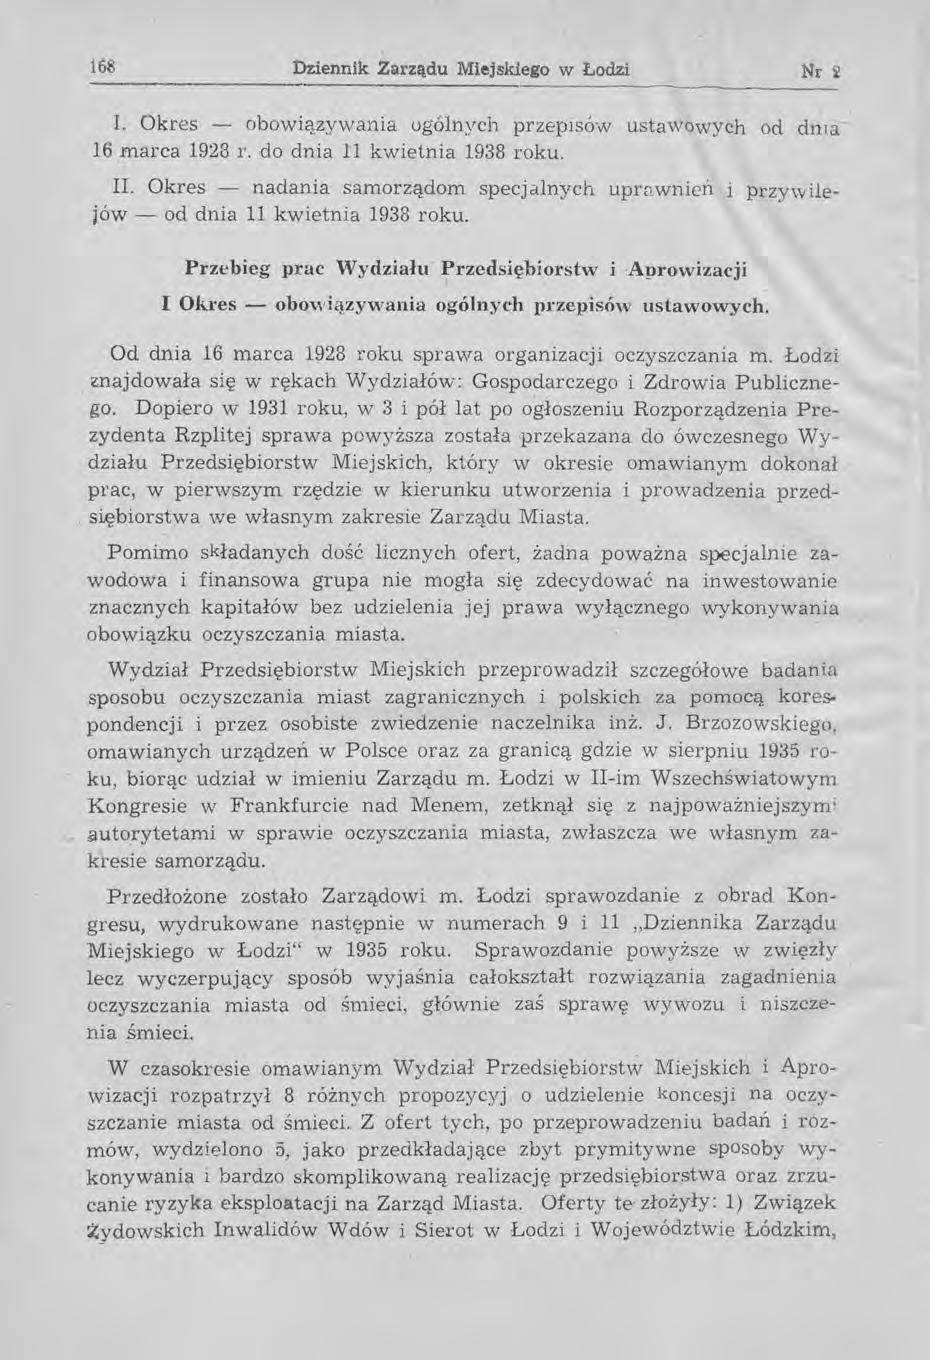 lb8 Dziennik Zarządu Miejskiego w Łodzi Nr 2 1. Okres - obowiązywania ugólnych przepisów ustawowych od dnla 16 marca 1928 r. do dnia 11 kwietnia 1938 roku. II.